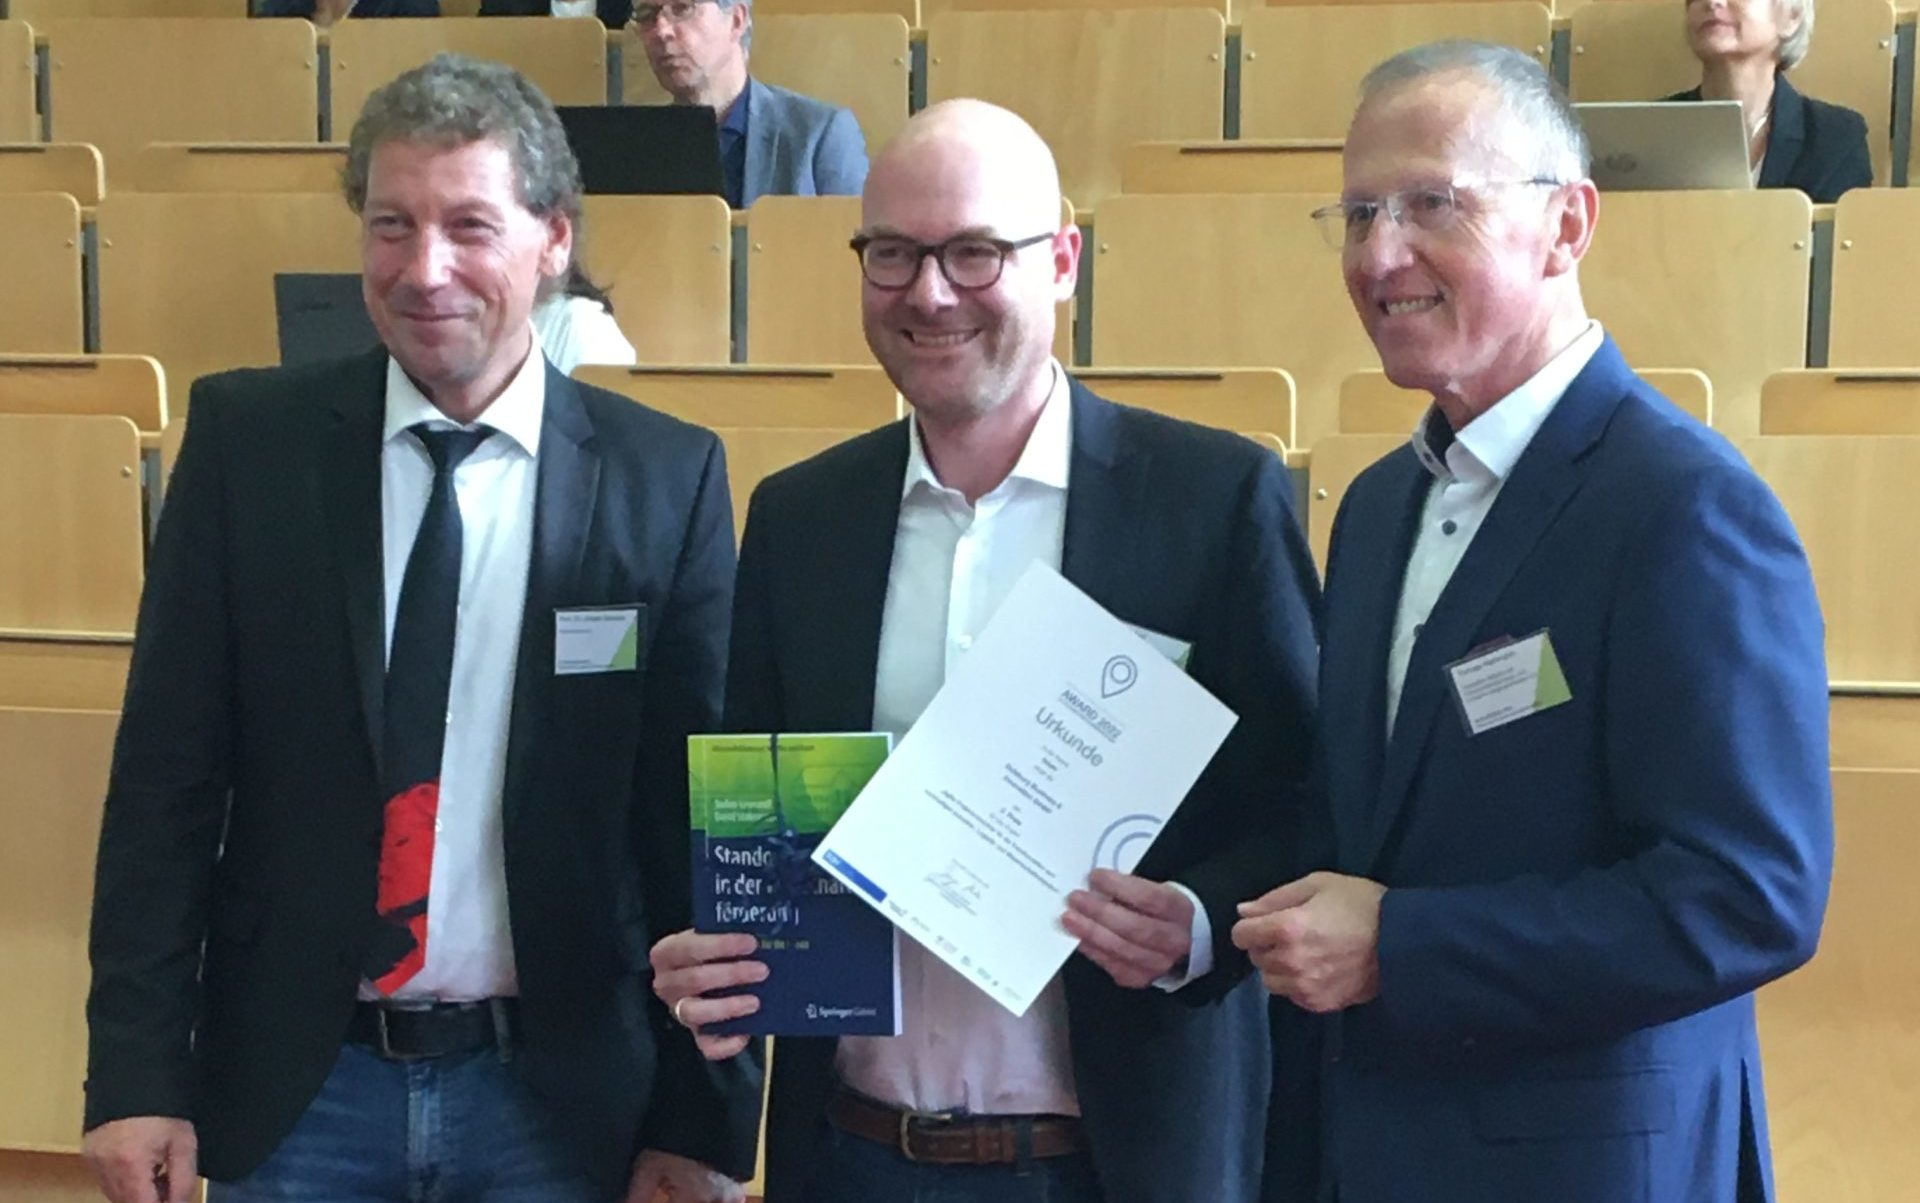 Award für innovative Wirtschaftsförderung für die Duisburg Business & In-novation GmbH (DBI)